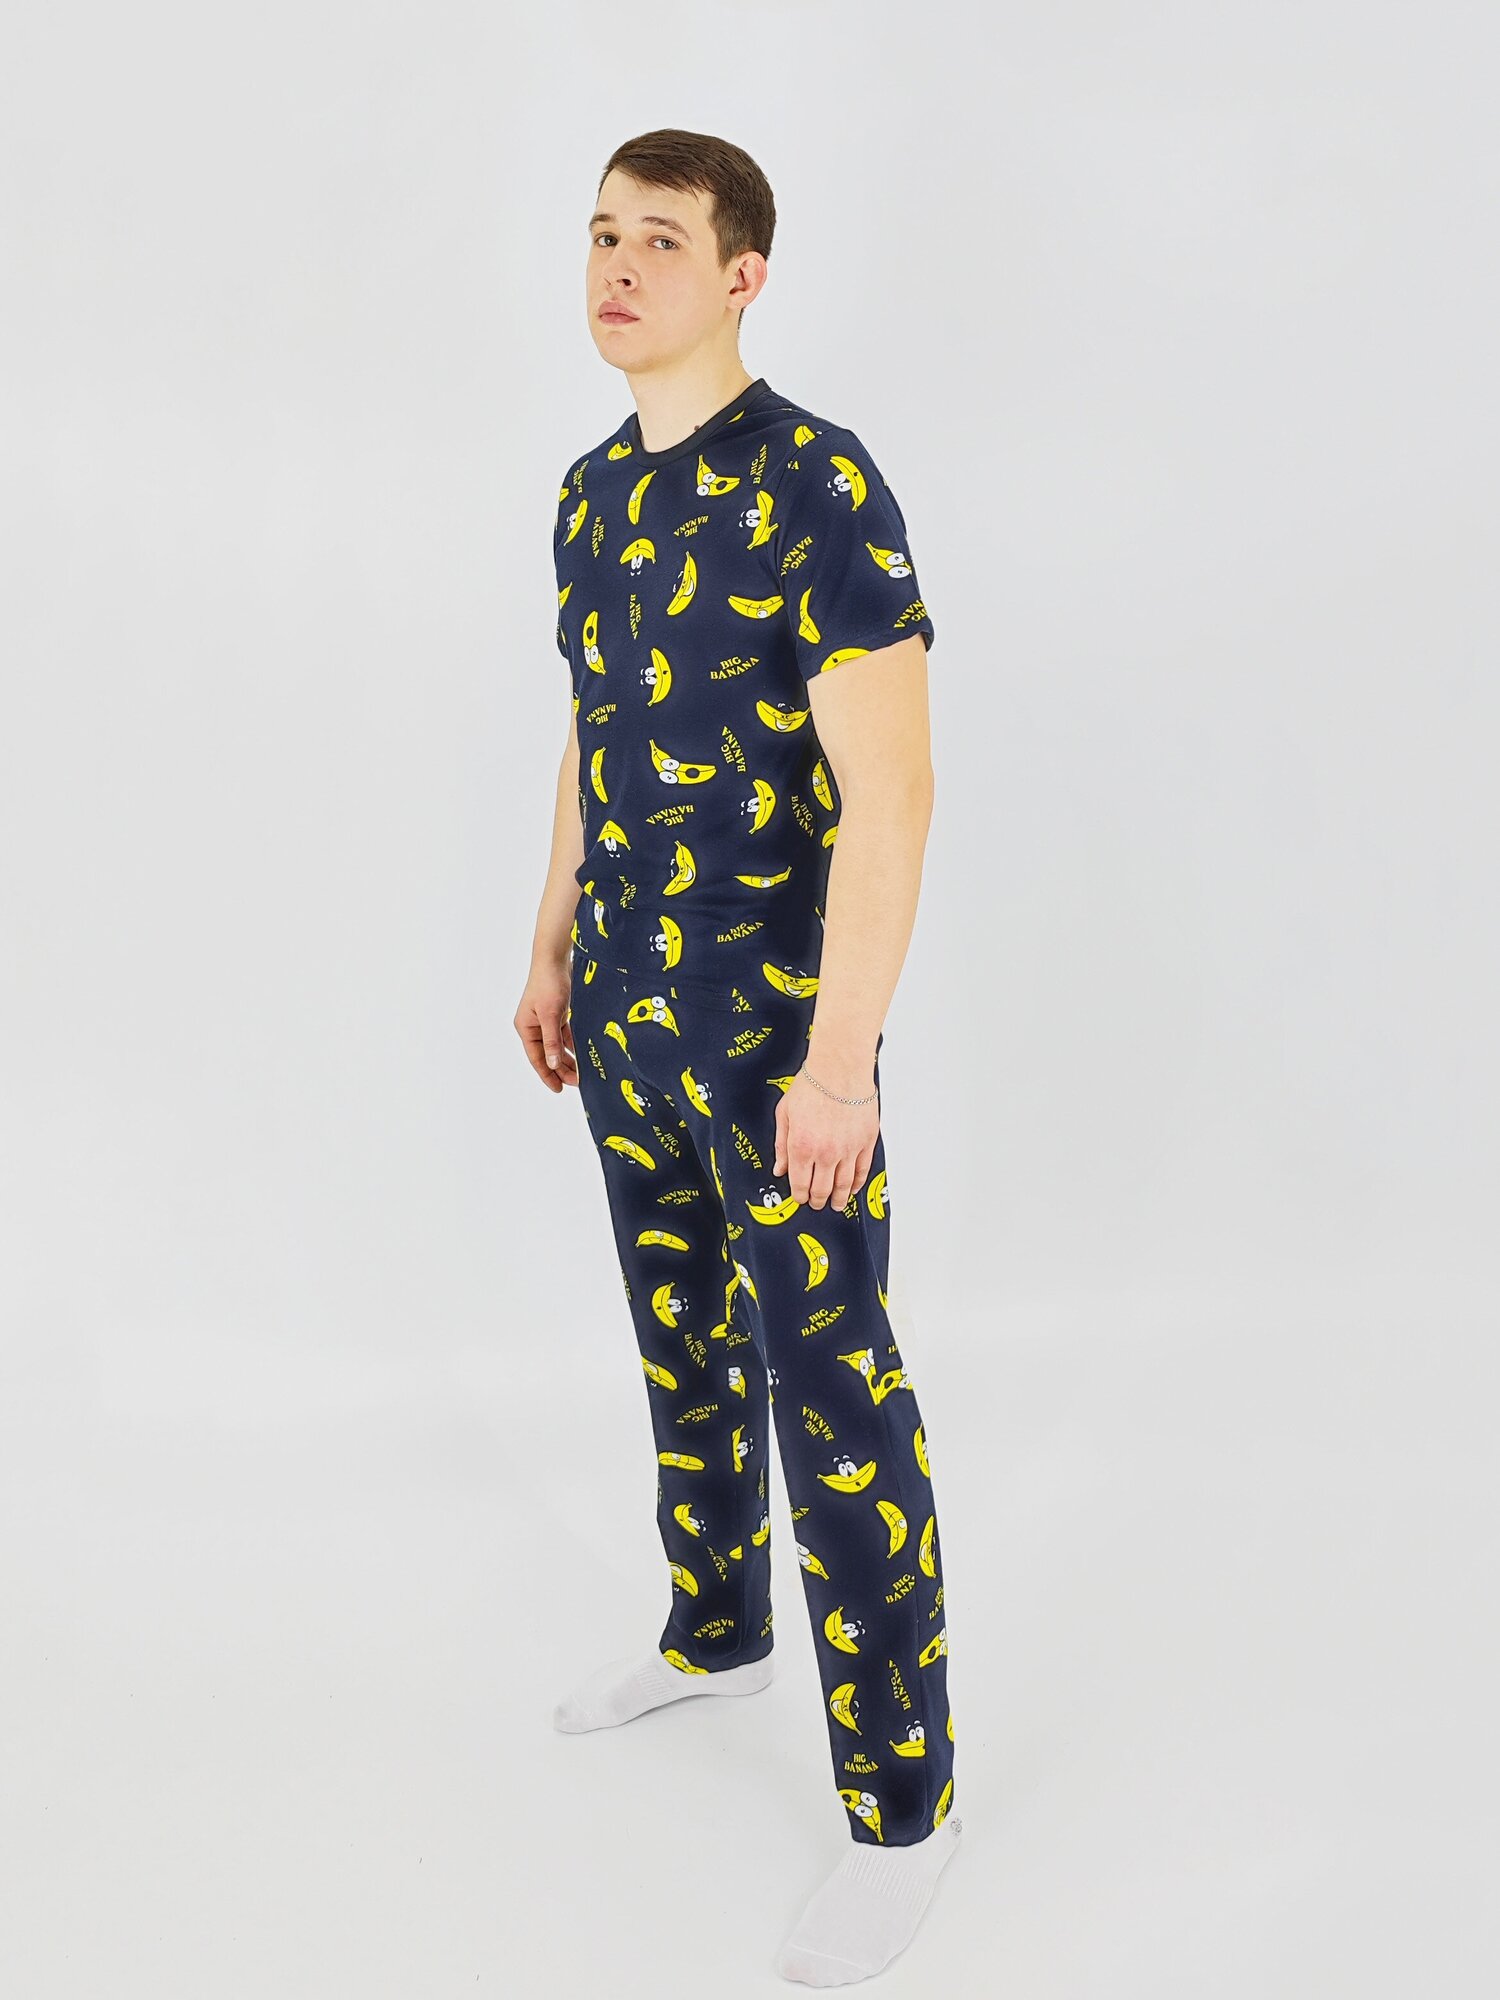 Мужская пижама, мужской пижамный комплект ARISTARHOV, Футболка + Брюки, Бананчик, синий желтый, размер 46 - фотография № 5